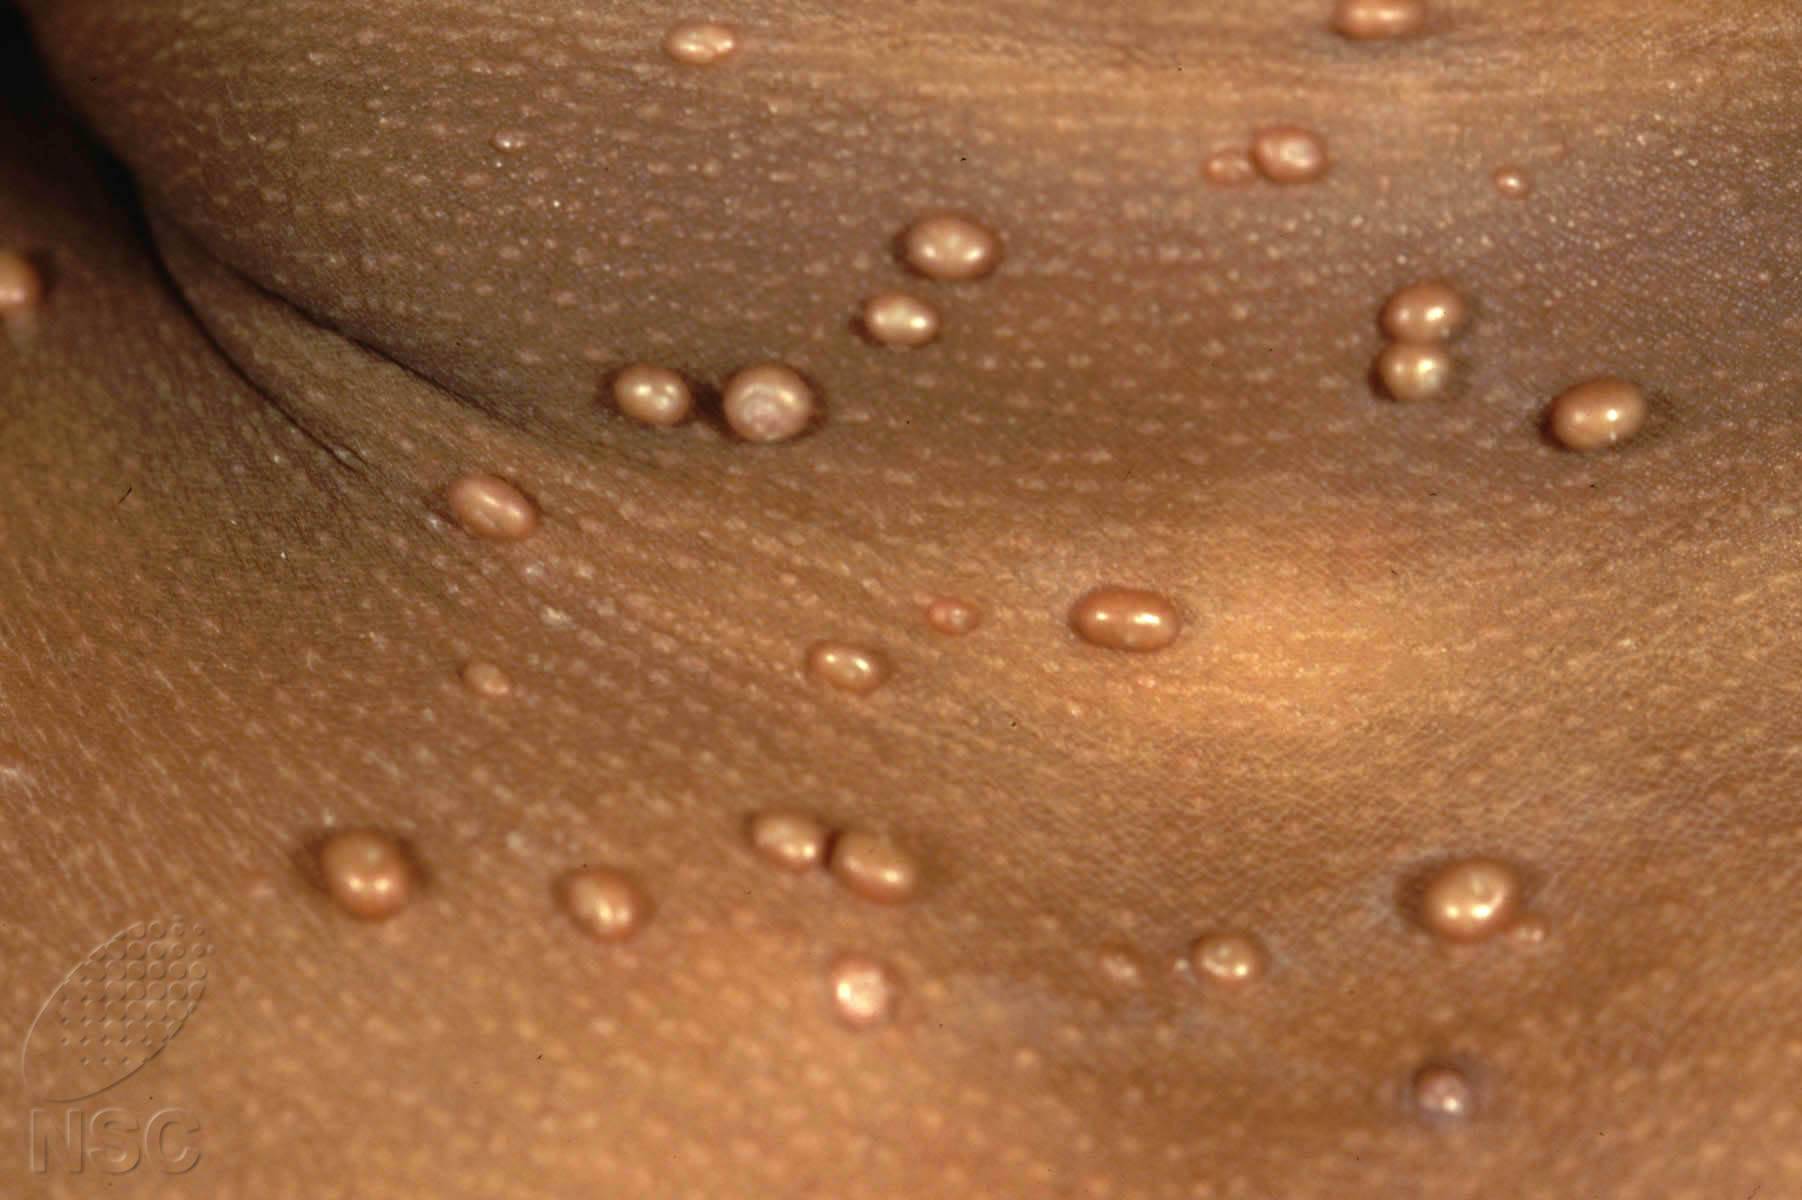 Что такое контагиозный моллюск и где он появляется? все, что вы хотели знать о данном заболевании.